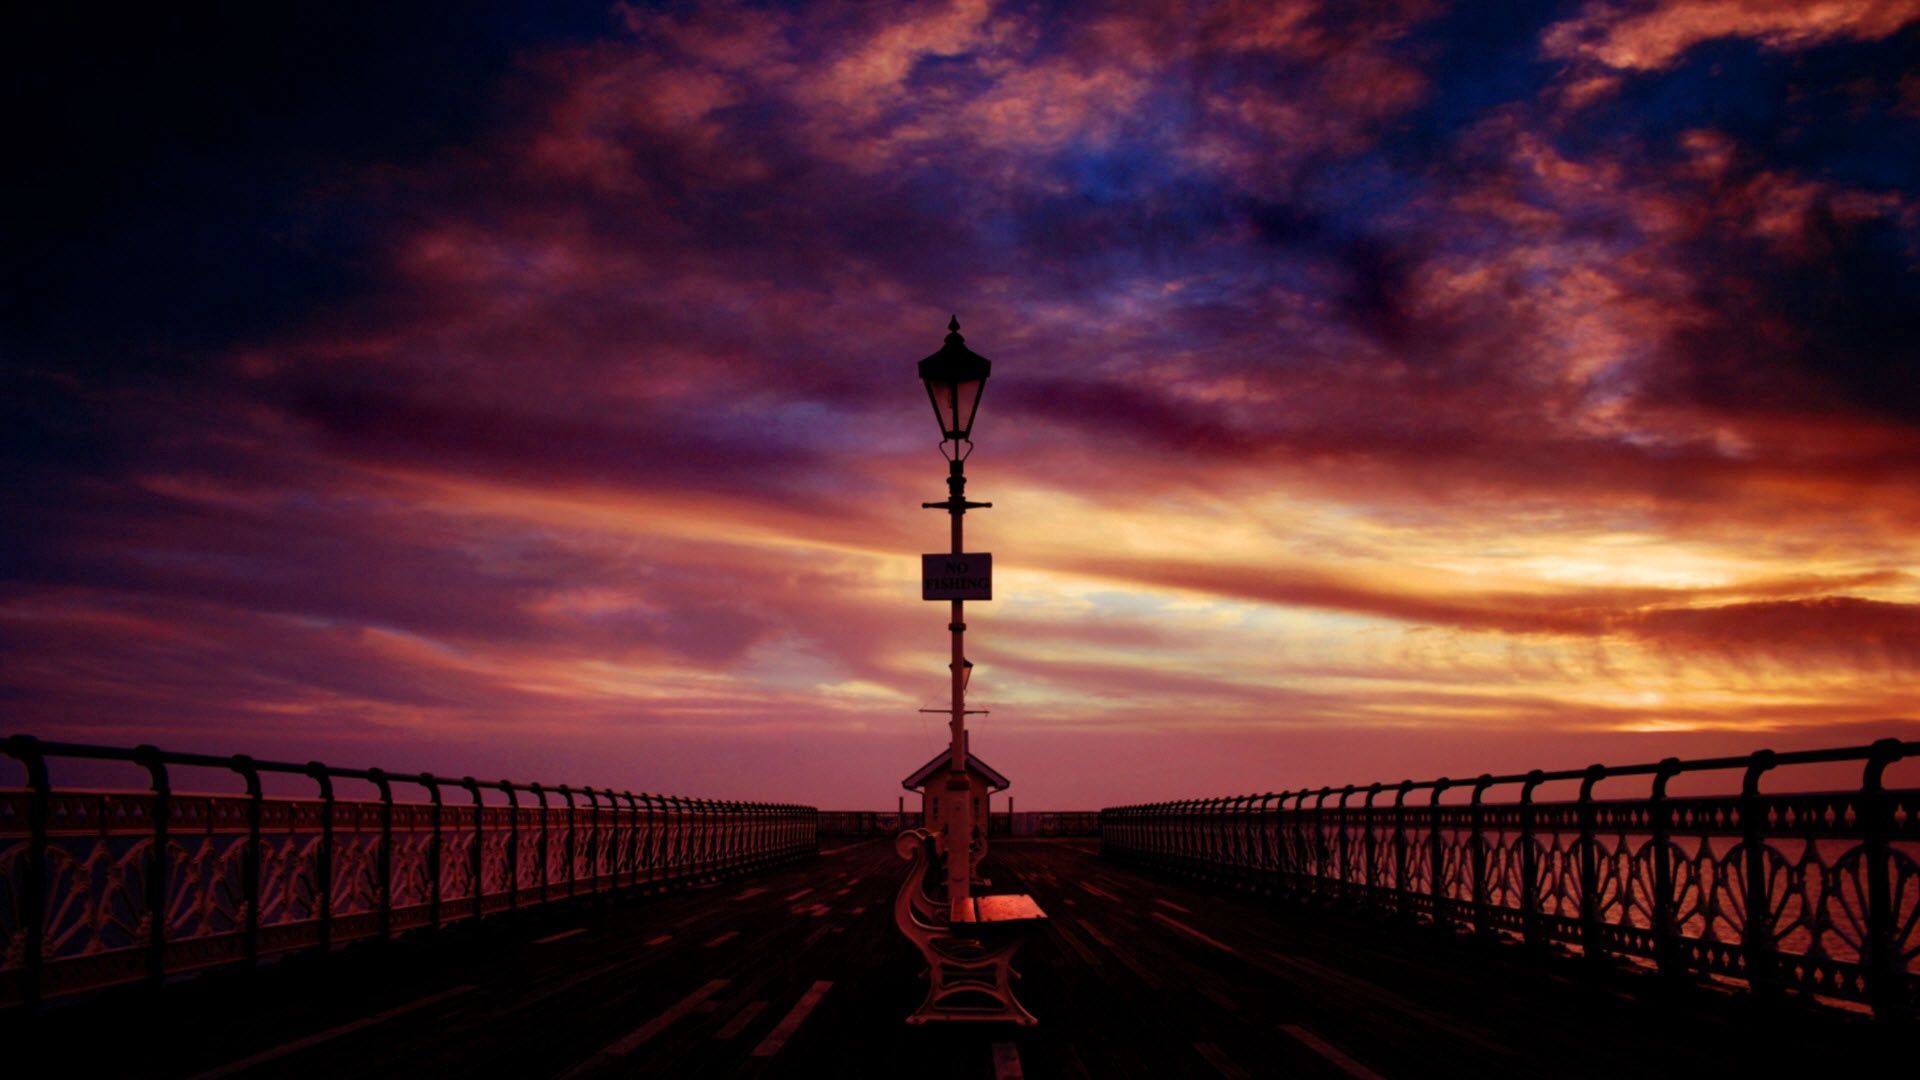 bench, sea, sunset, sky, dark, pier, evening wallpaper for mobile